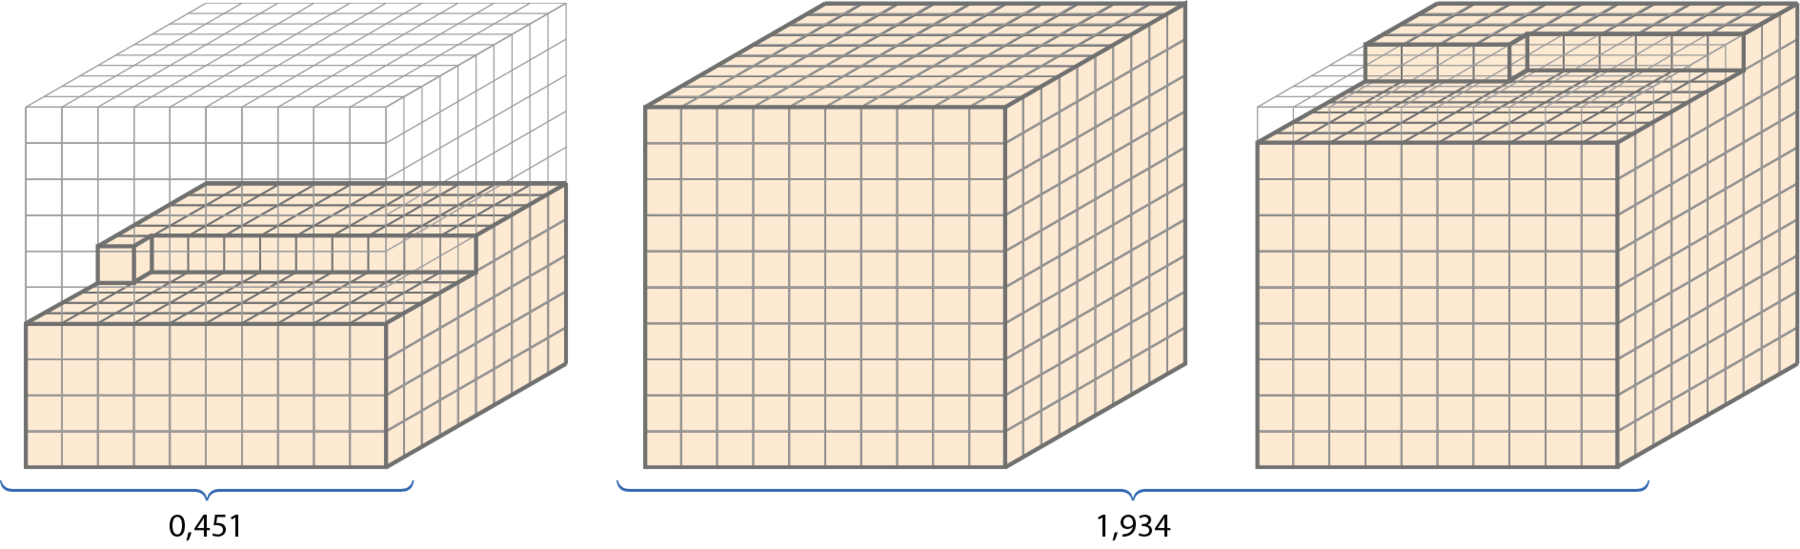 Ilustração.  Um cubo grande do material dourado transparente. Foi preenchido de baixo pra cima 4 fileiras de cubinhos completas e mais 51 cubinhos da quinta fileira. O número que representa essa figura é 0,451 ou 451 milésimos.

Ilustração. Um cubo do material dourado todo preenchido e mais um cubo onde foram preenchidas 9 fileiras de cubinhos e mais 34 cubinhos da última fileira. O número que representa essa figura é 1,934 ou 1 inteiro e 934 milésimos.